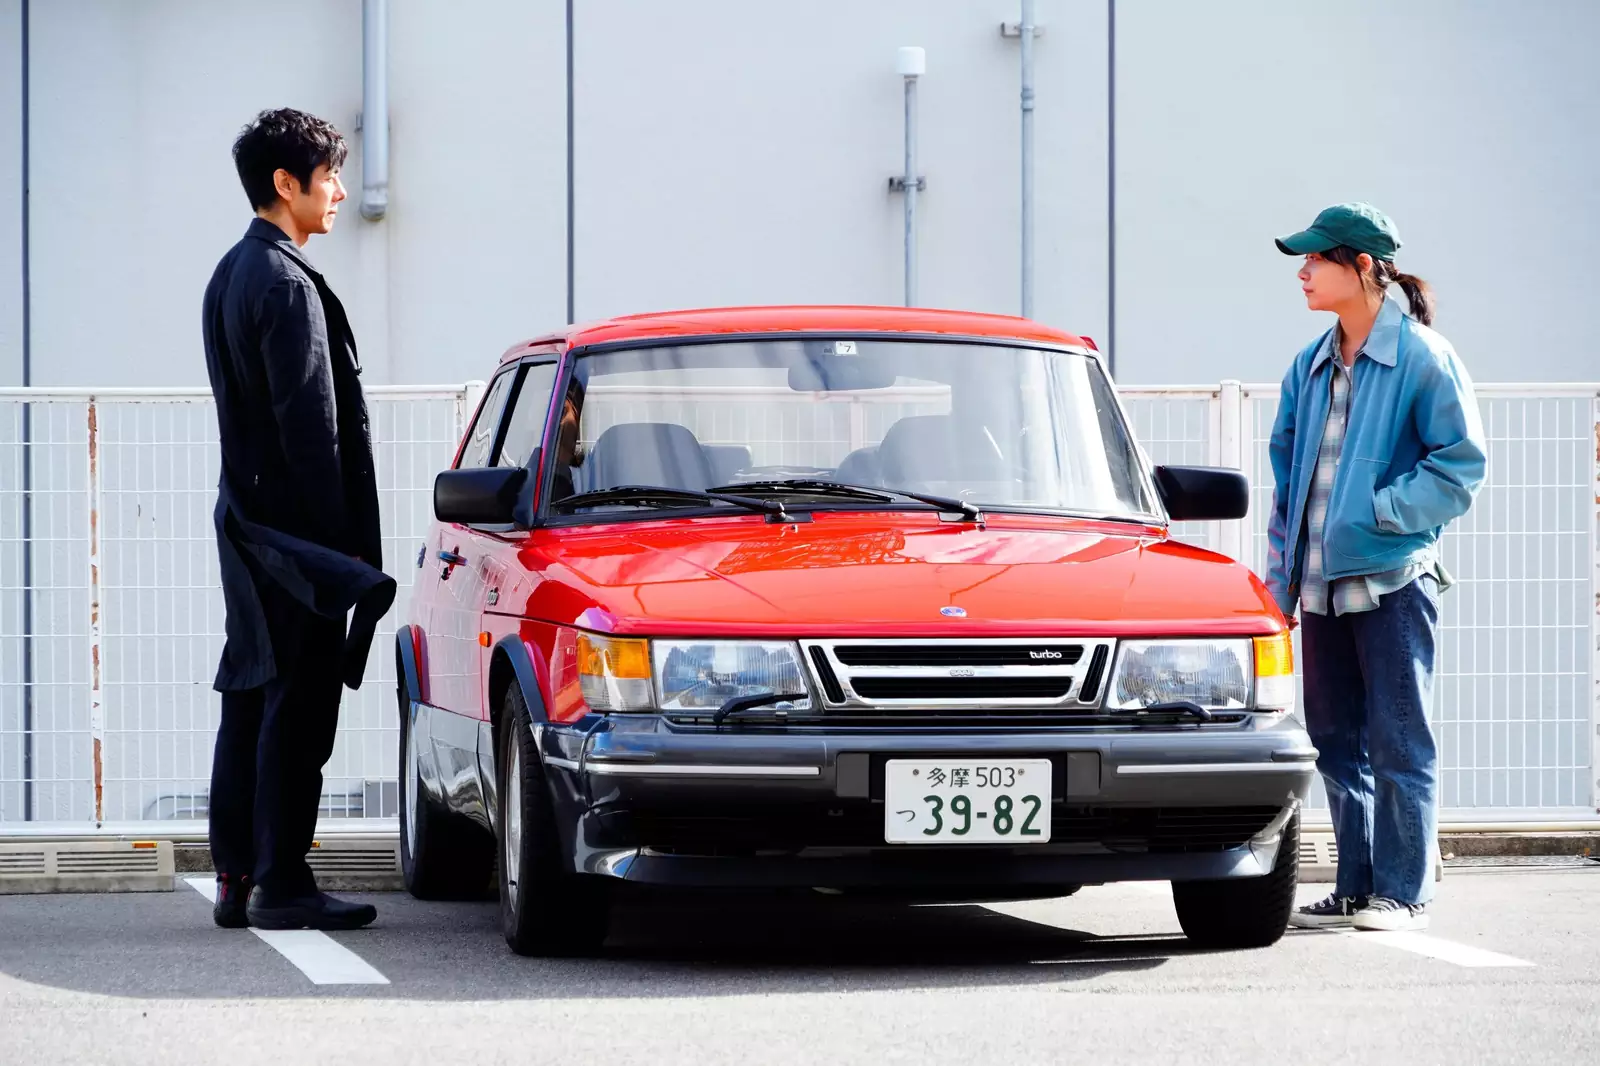 Сюжетную линию о Юсуке и его девушке-шофере Мисаки можно по праву считать самой мощной и пронзительной во всей картине.